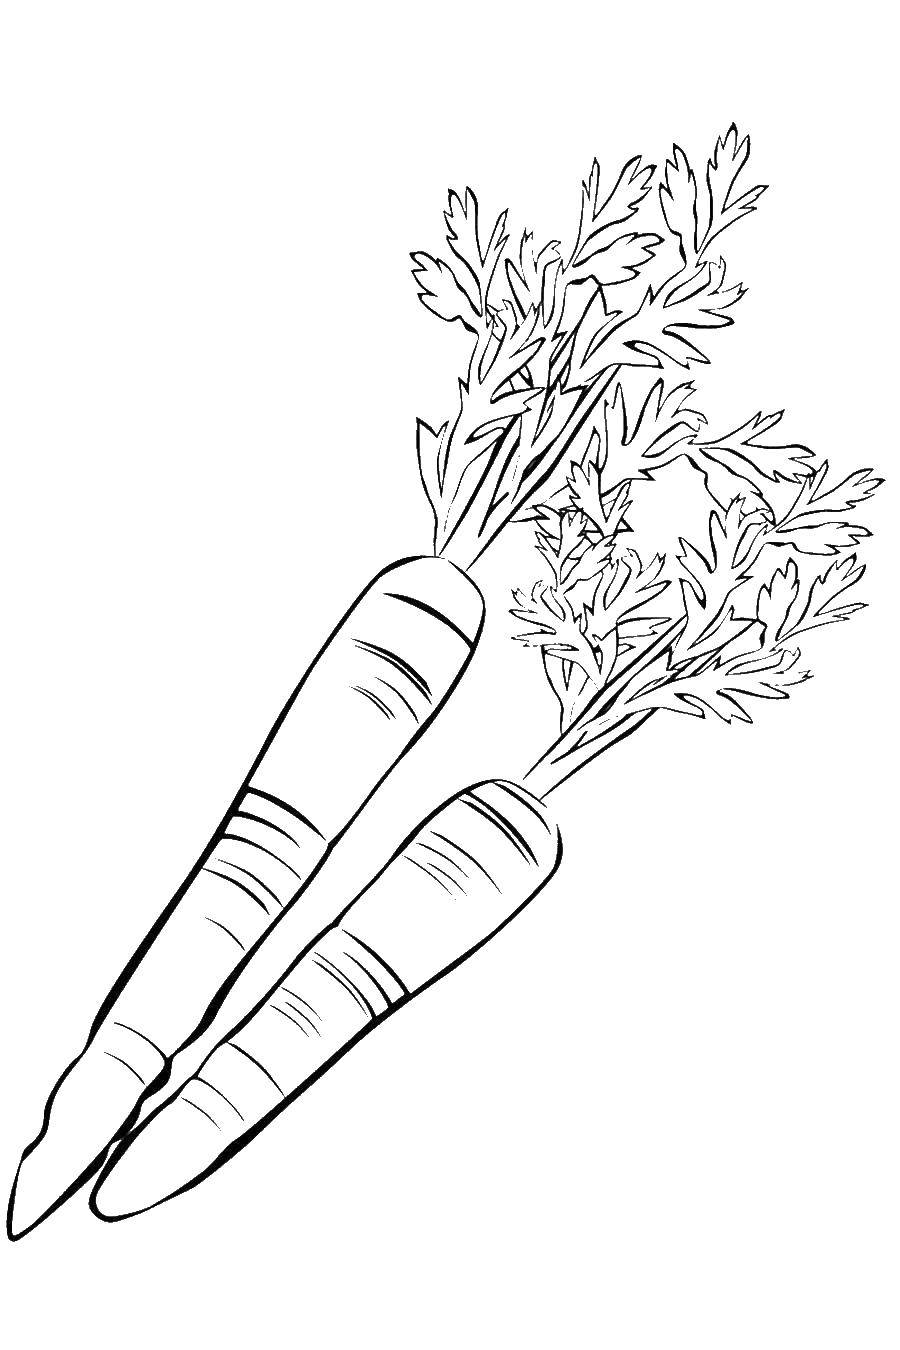 Раскраска моркови для детей (морковь, огурцы)